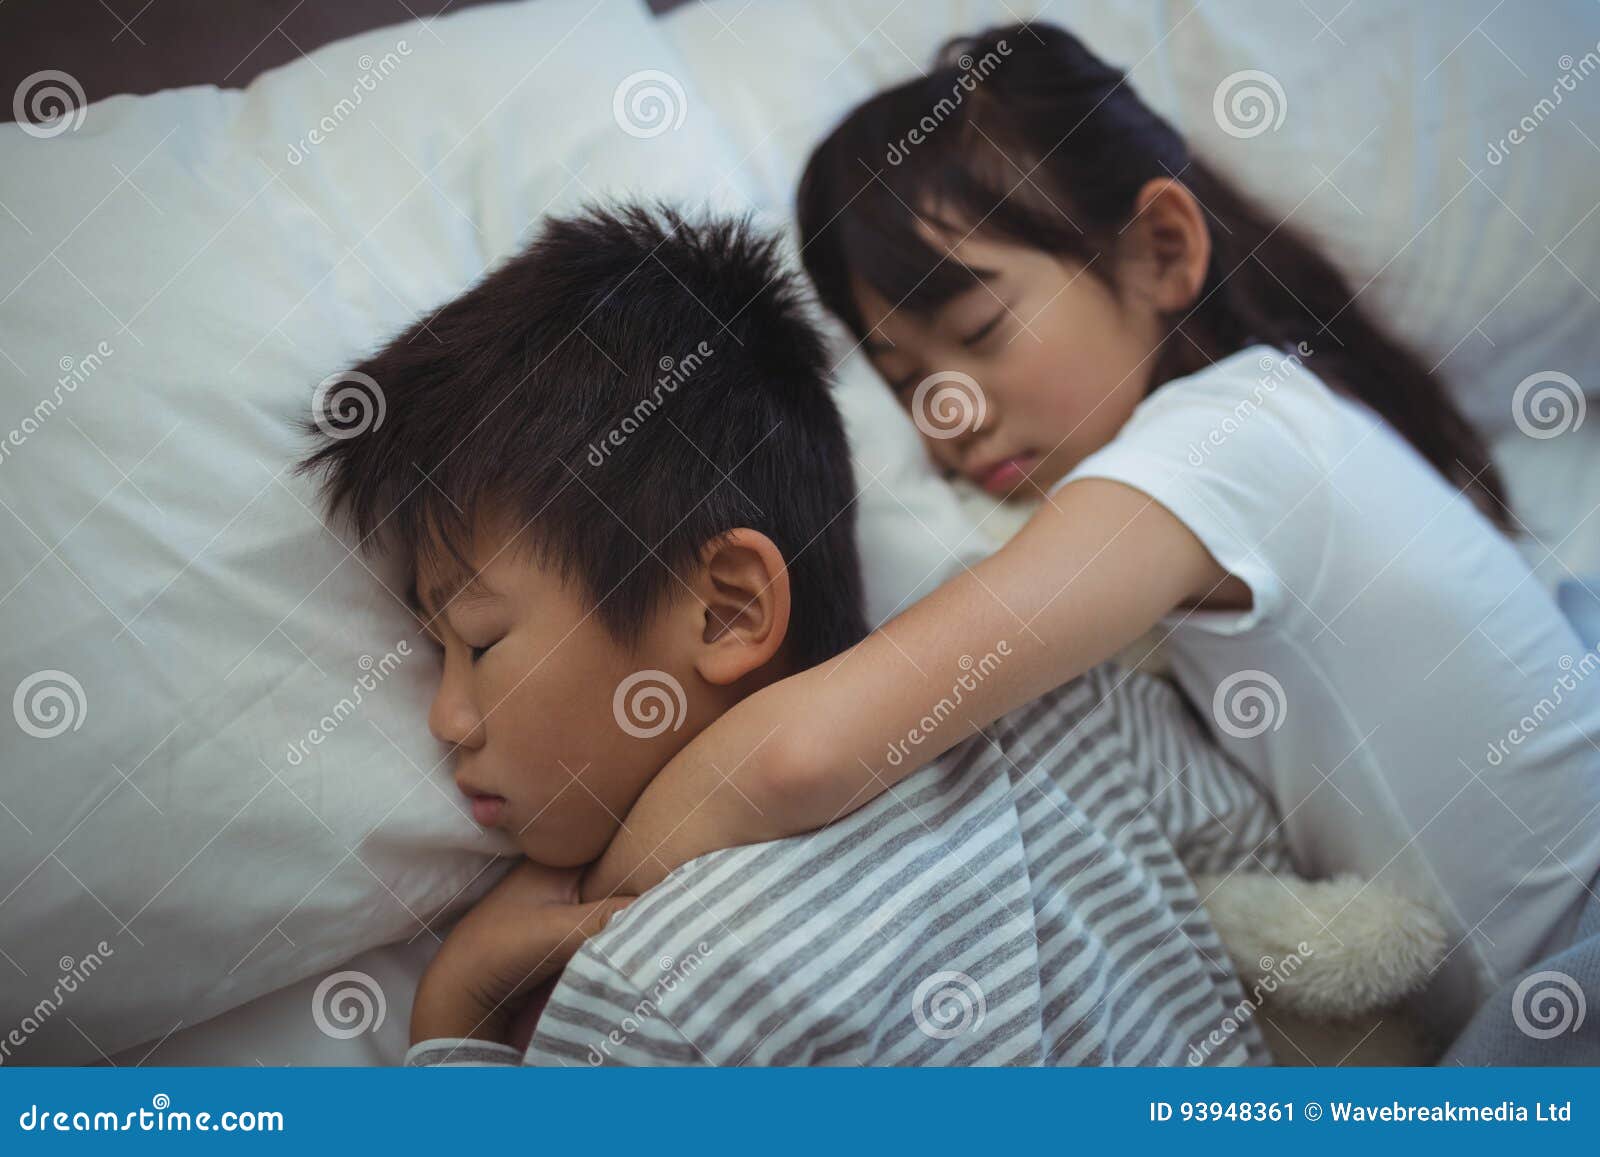 Сон плакала сестра. Спящей сестра японская. Сестра и брать ночью в кровати. Сестрёнка заползла к брату в постель.